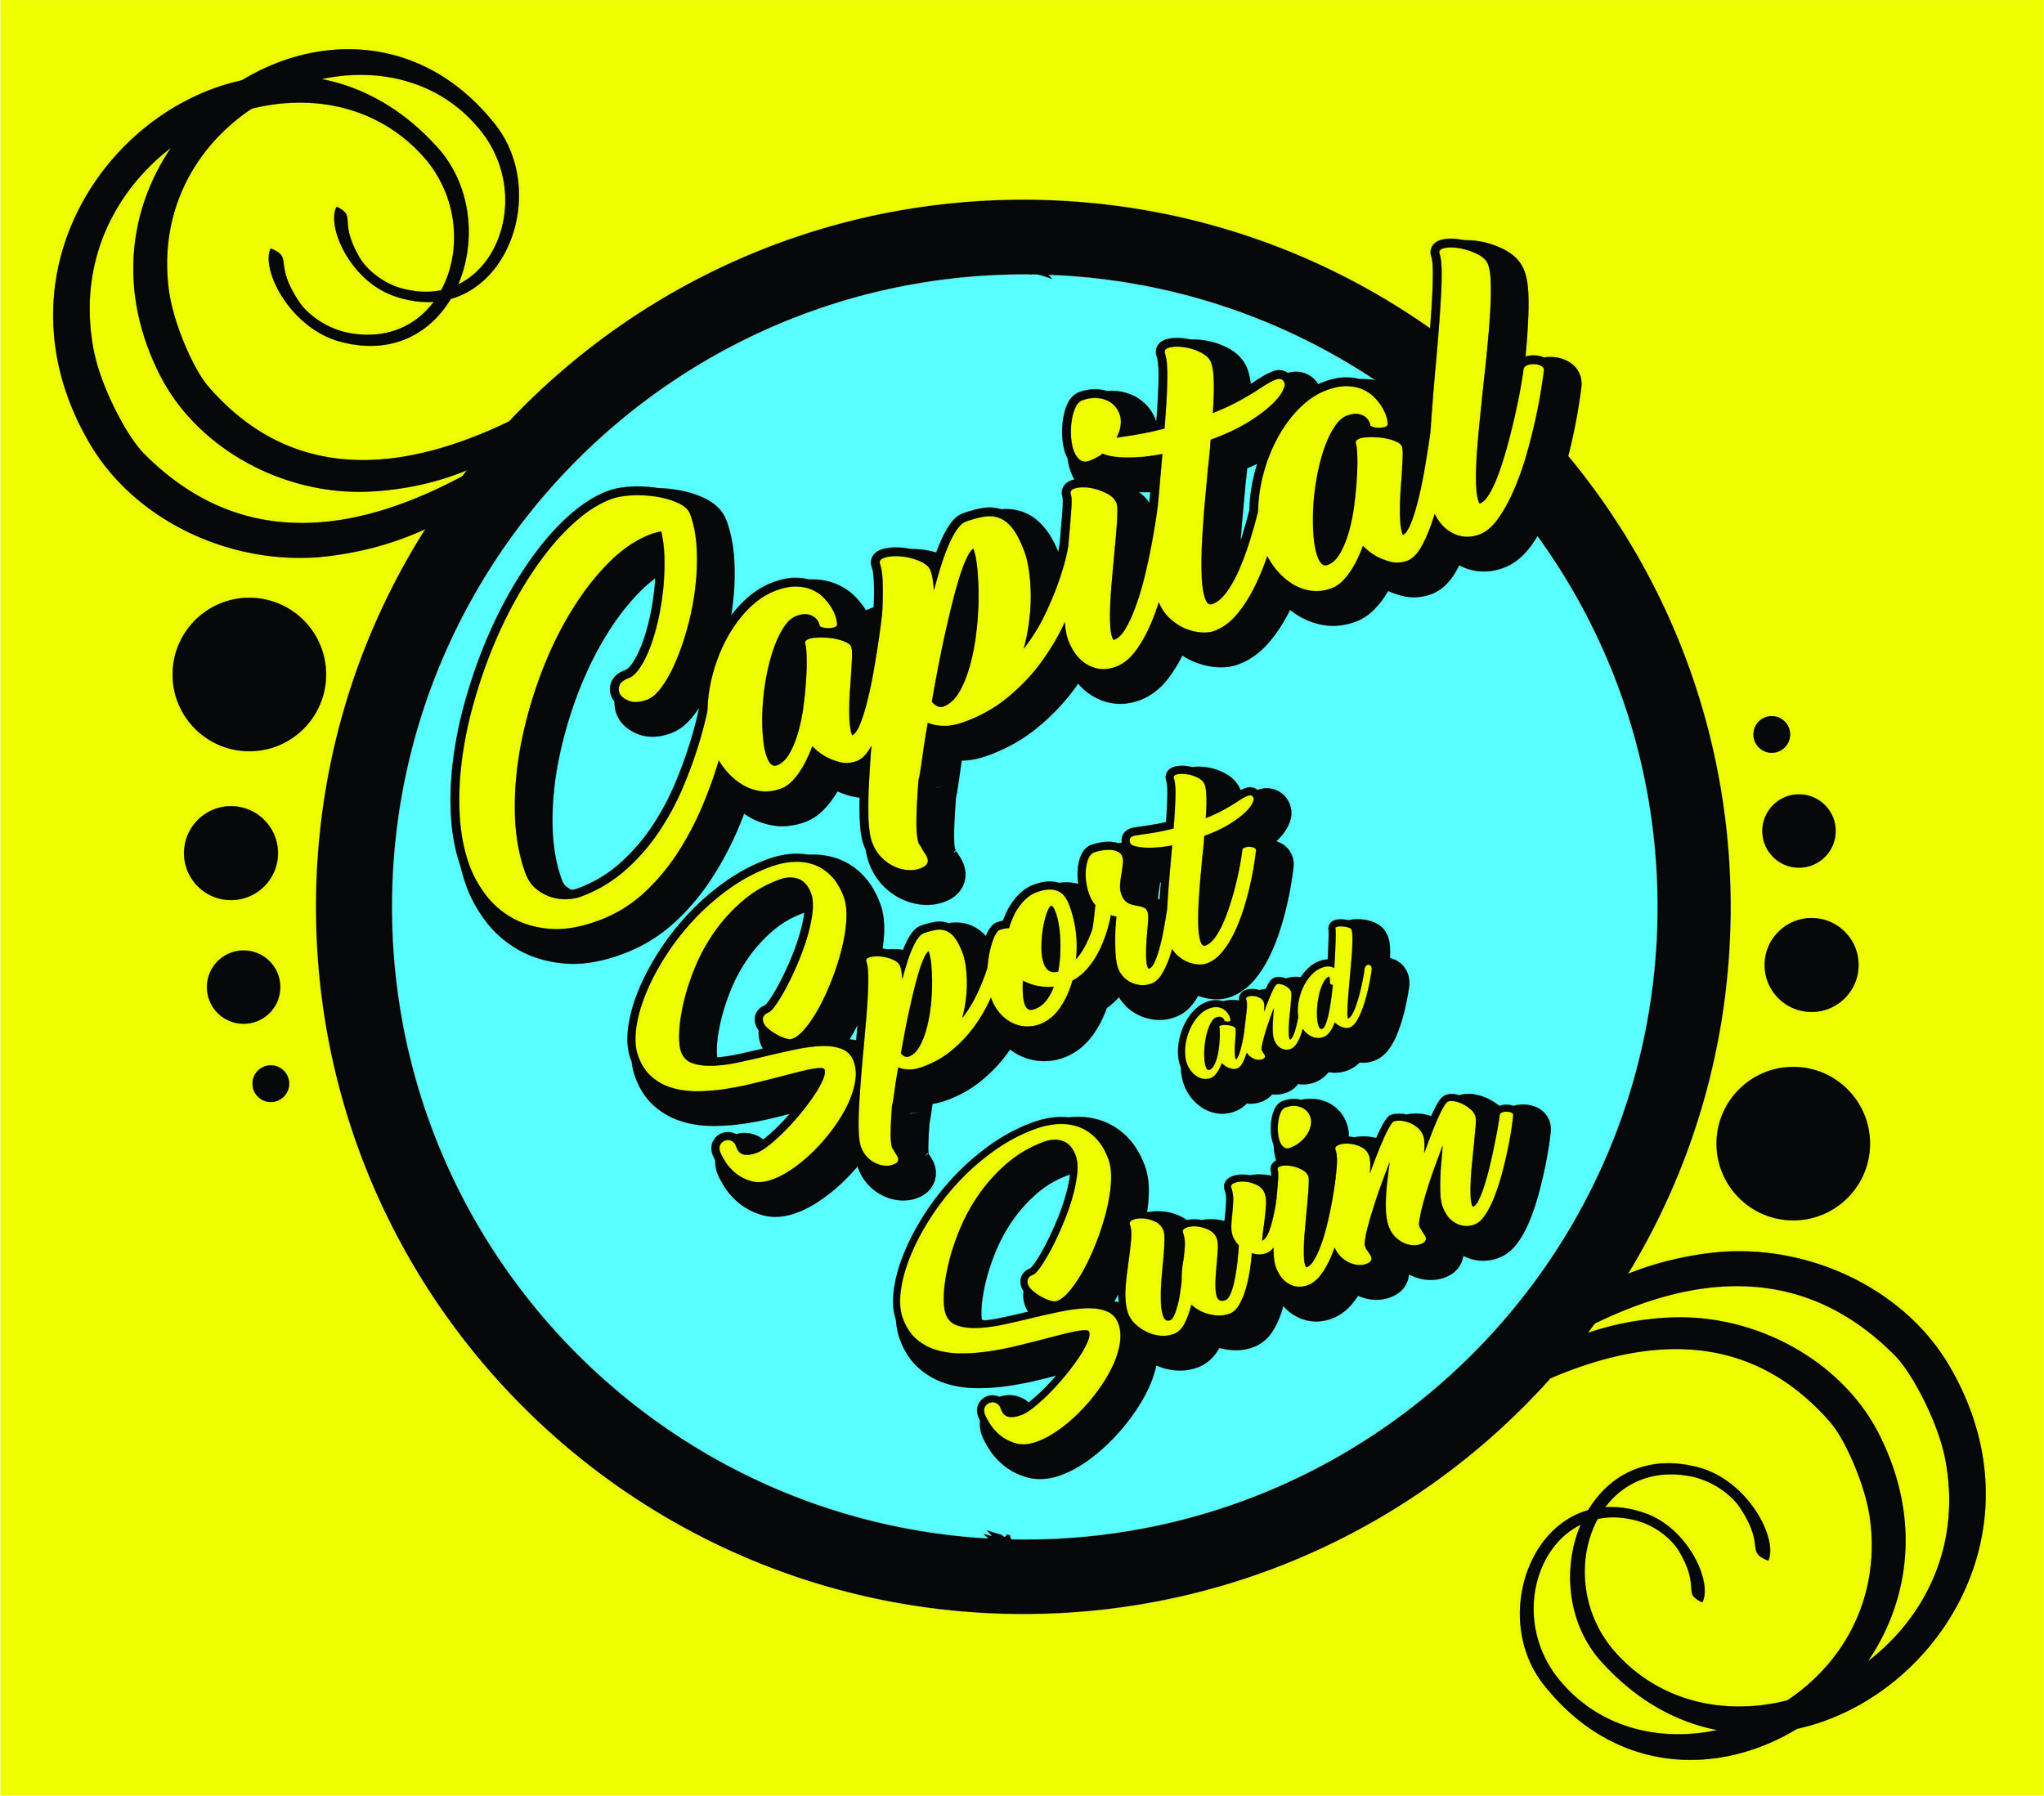 Capital Sport and Swim